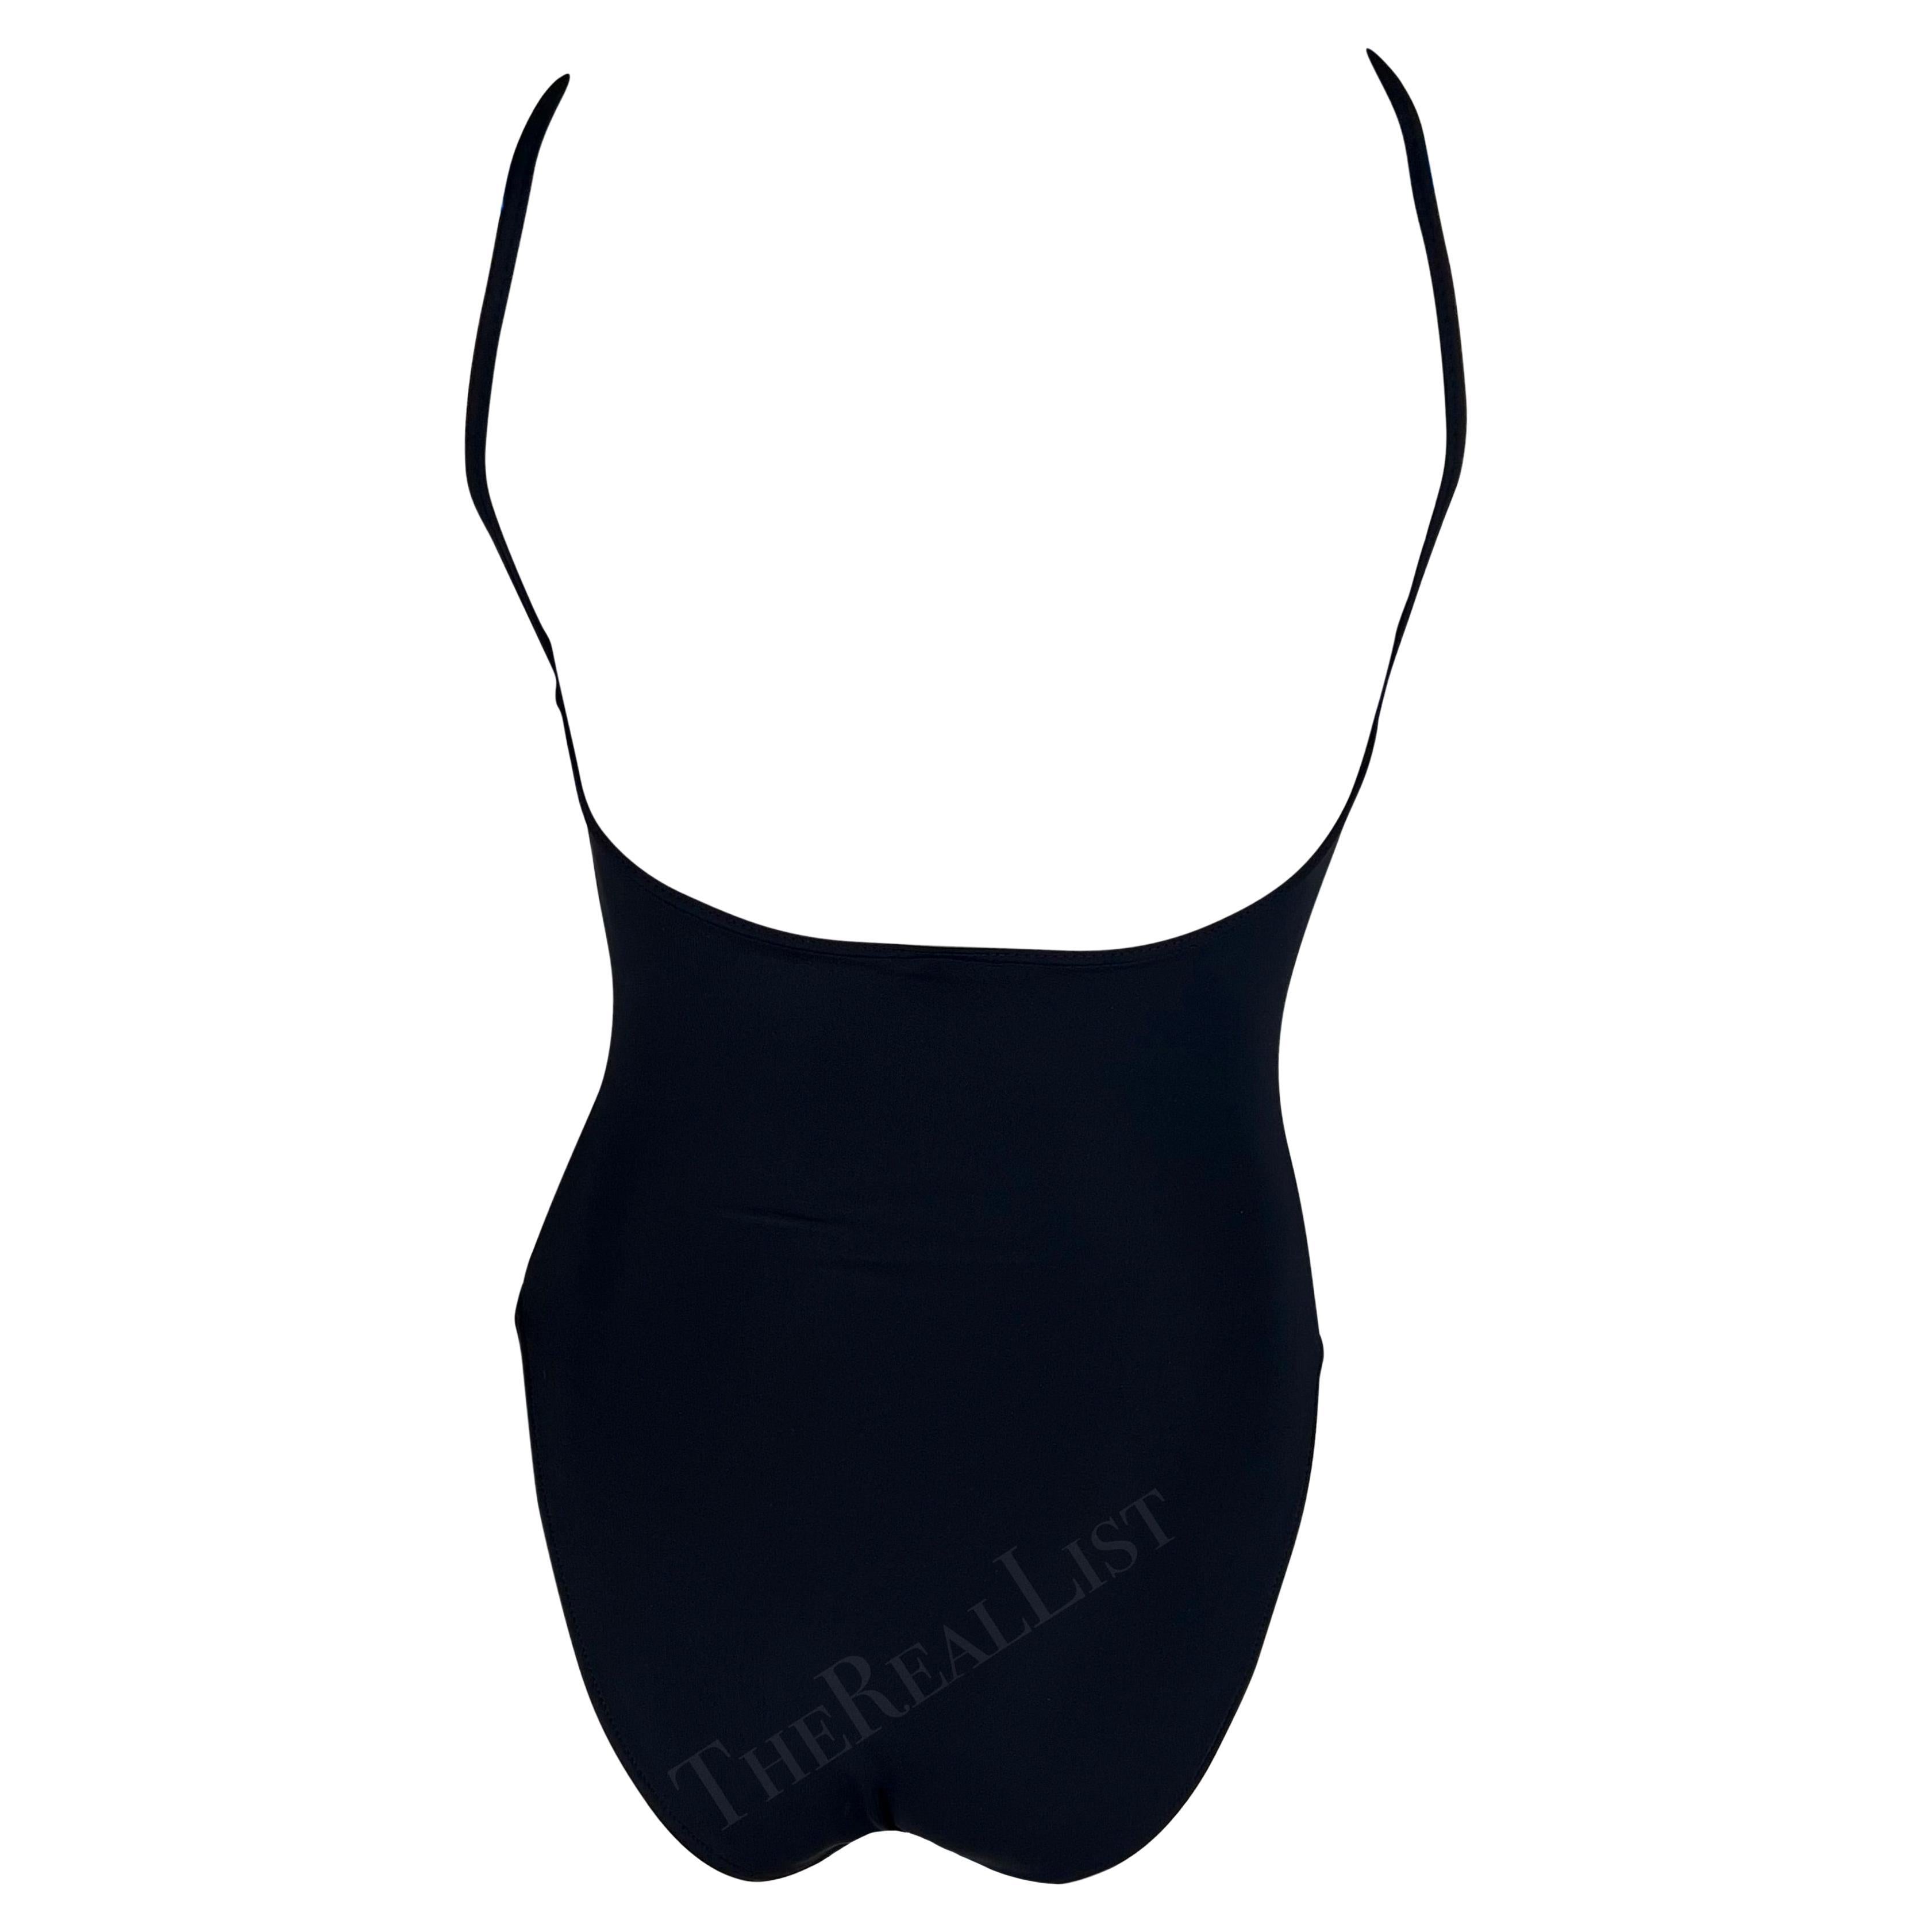 S/S 1998 Herve Leger Black One Piece Body Suit Swimsuit Bodysuit For Sale 2